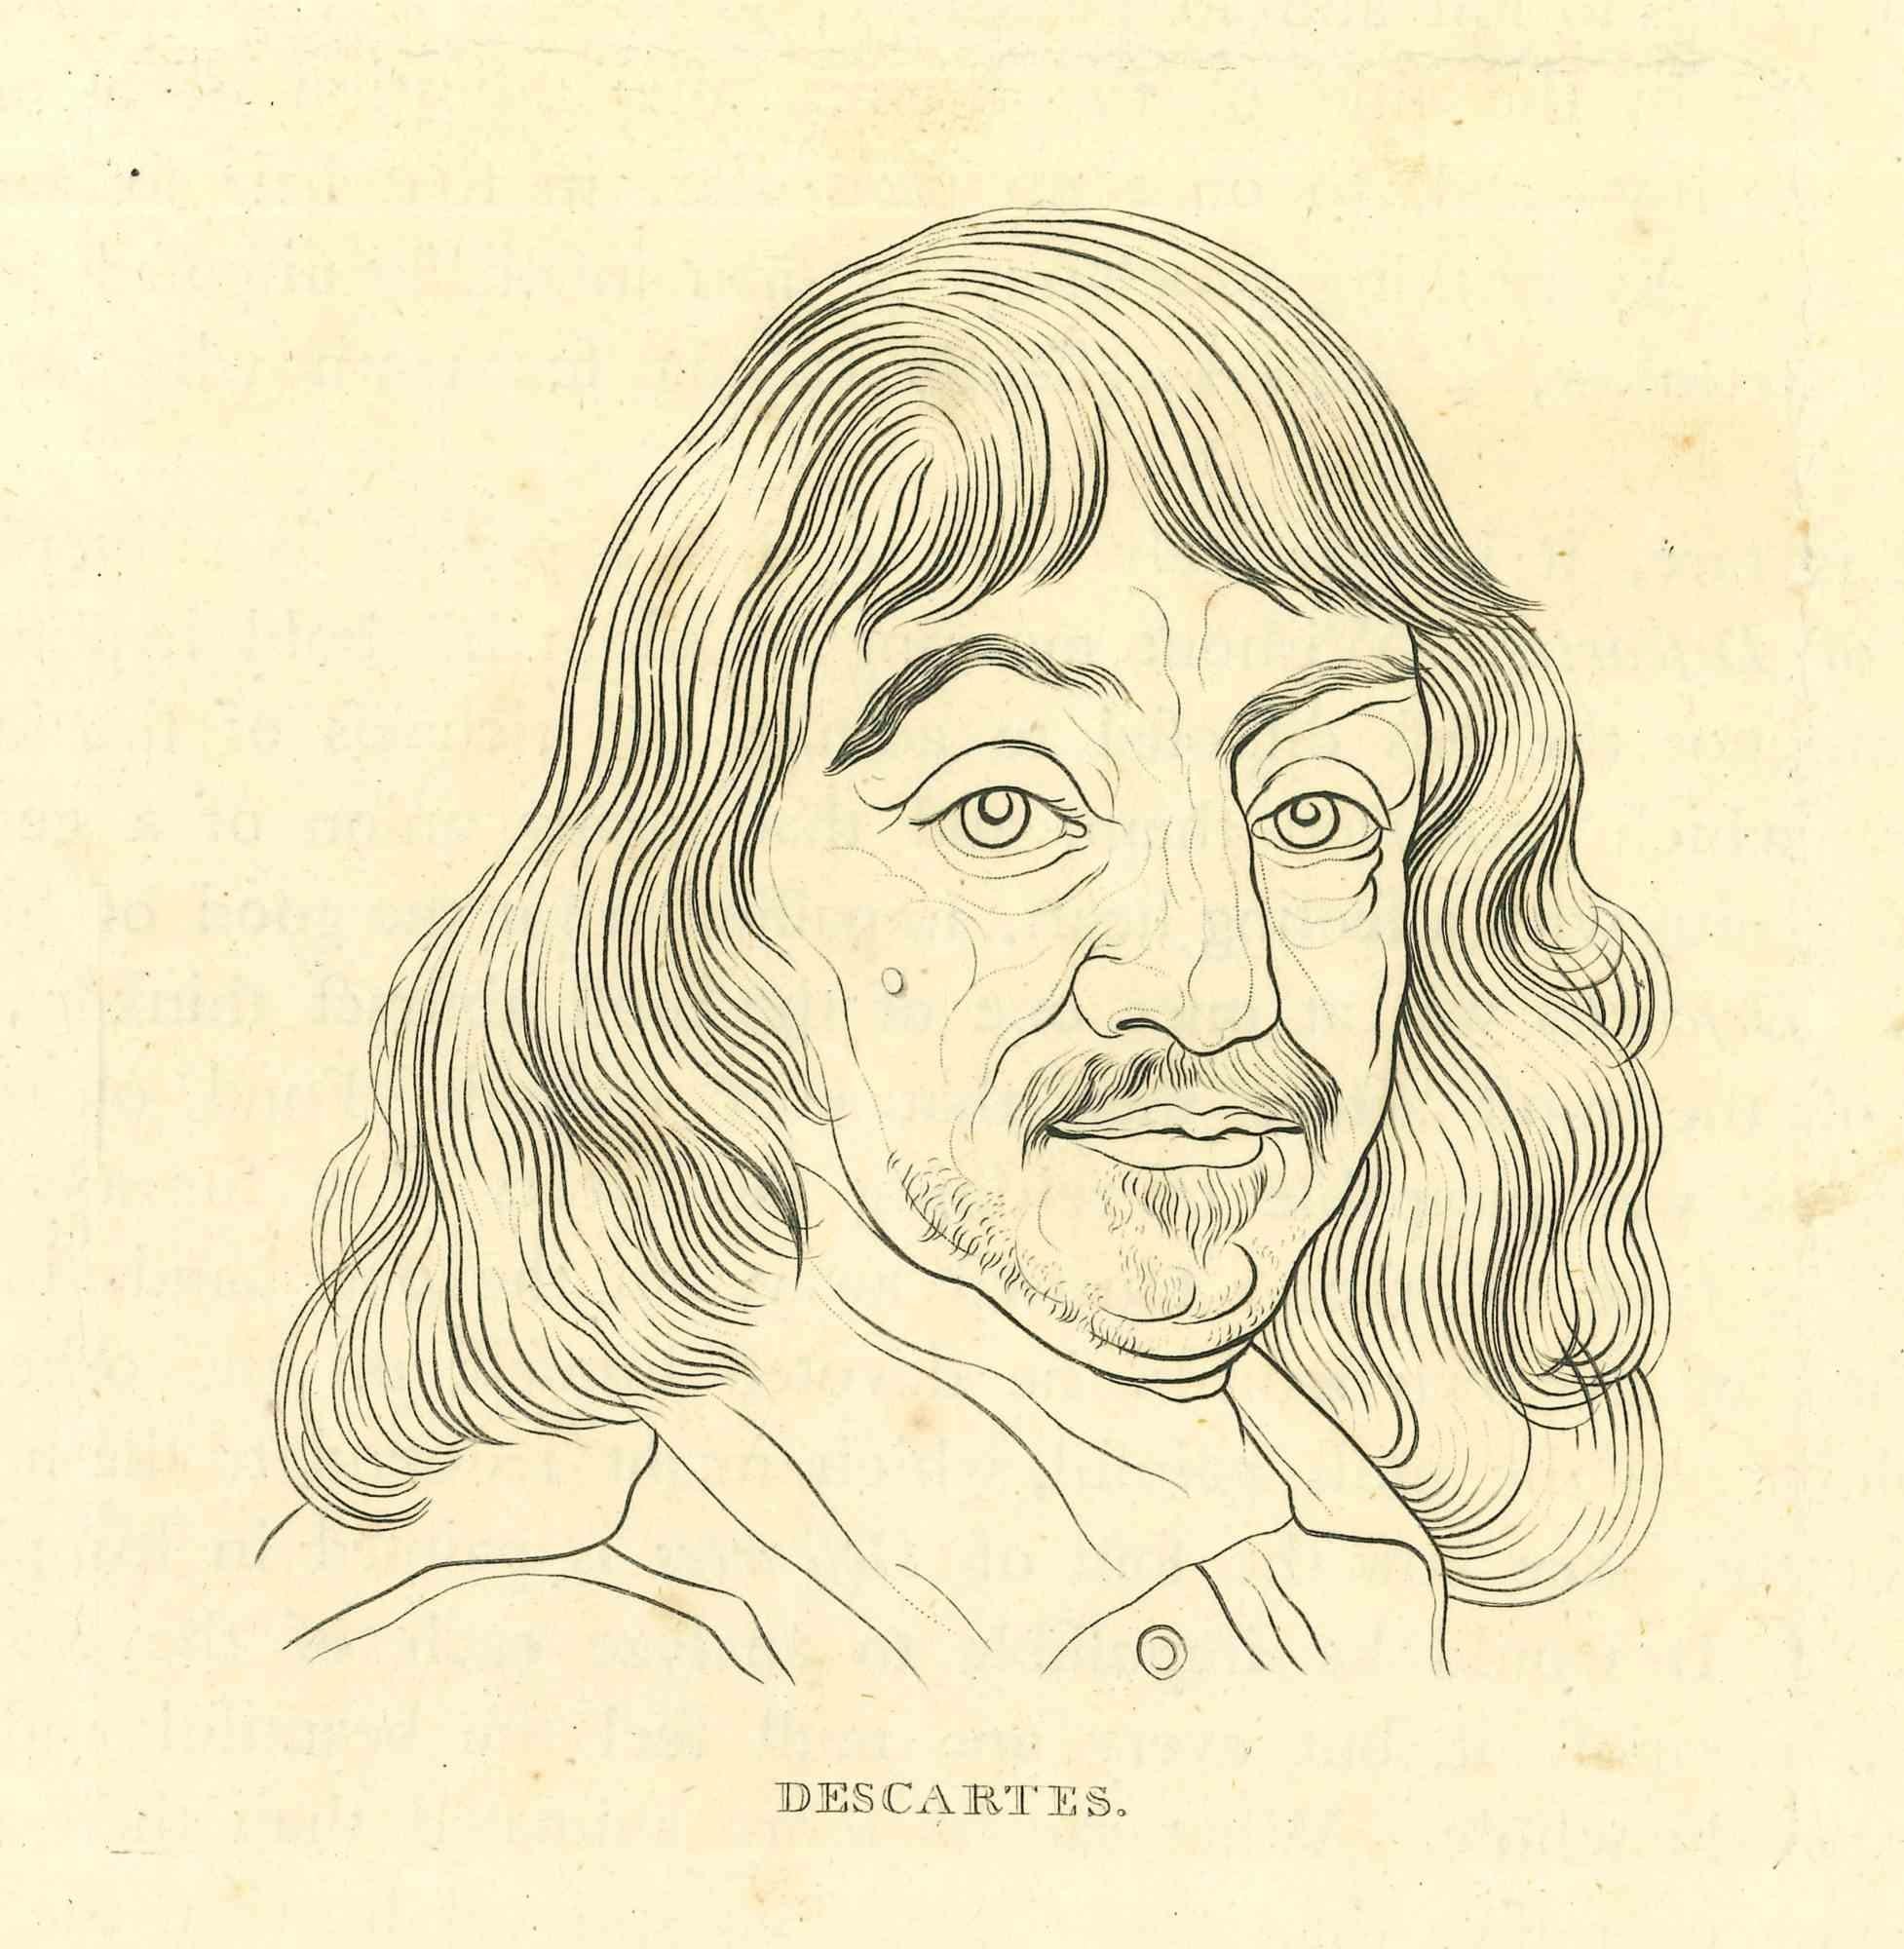 Das Porträt von René Descartes ist ein Original-Kunstwerk von Thomas Holloway (1748 - 1827).

Original-Radierung von J.C. Lavater's "Essays on Physiognomy, Designed to promote the Knowledge and the Love of Mankind", London, Bensley, 1810. 

Dieses